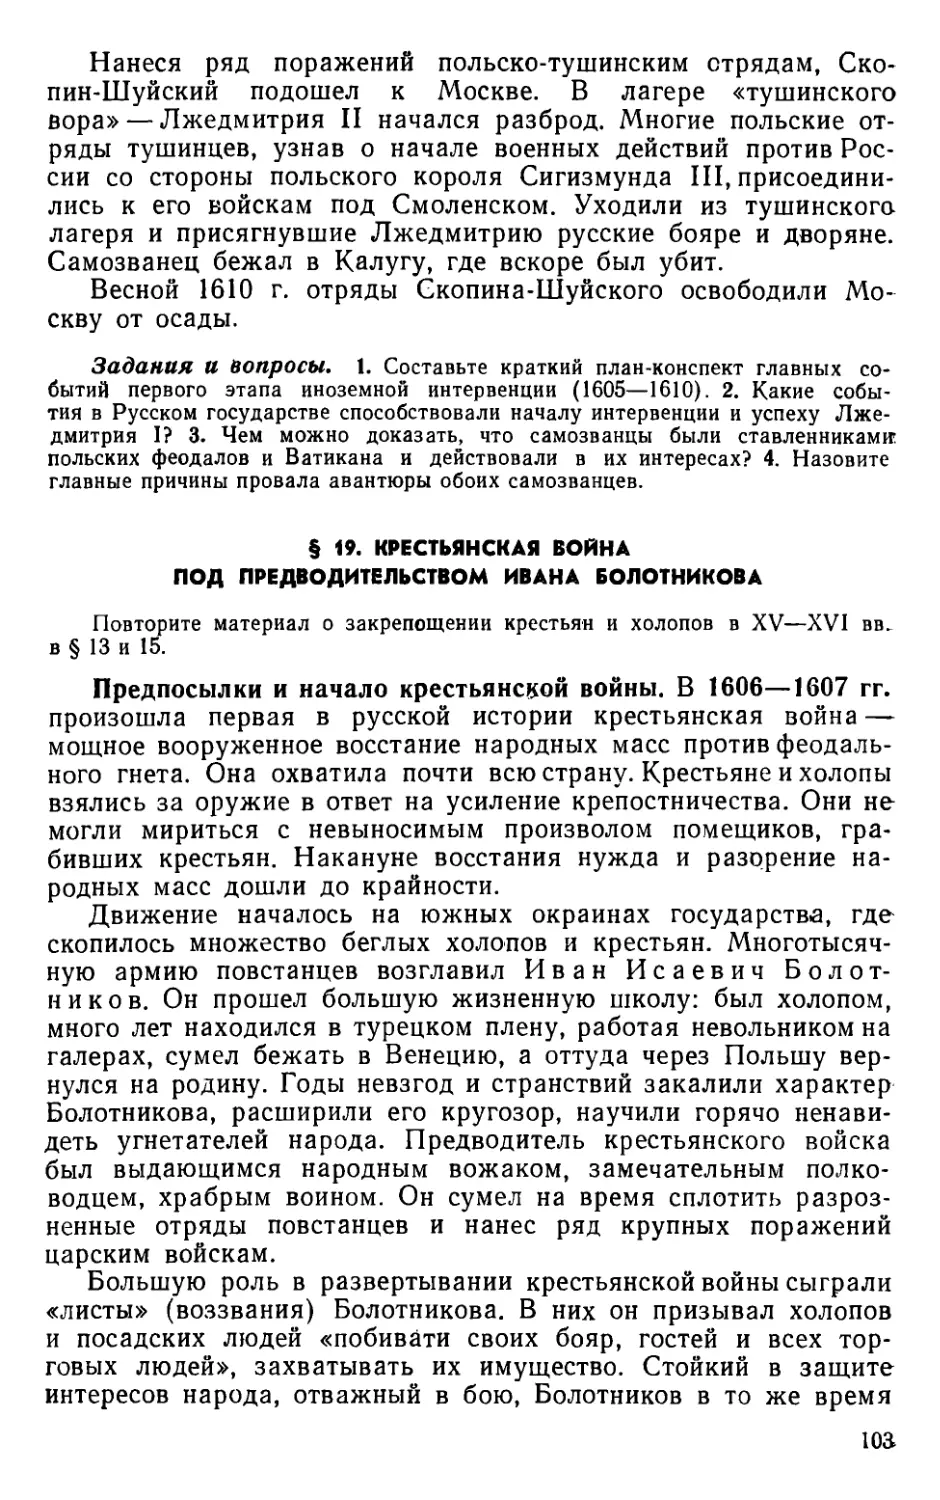 § 19. Крестьянская война под предводительством Ивана Болотникова